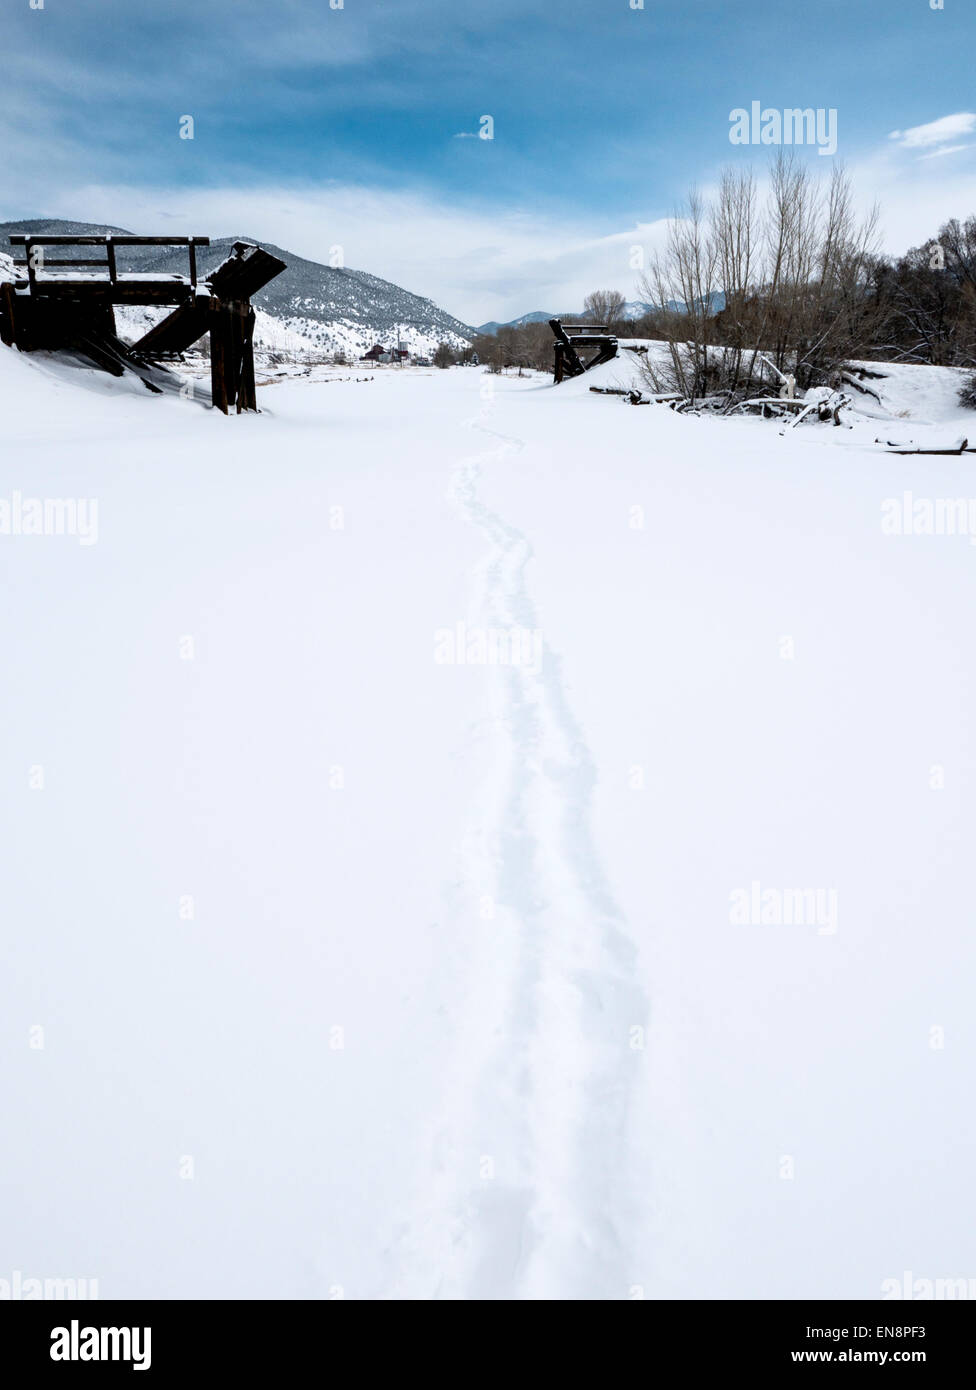 Orme e piste in neve fresca. Foto Stock